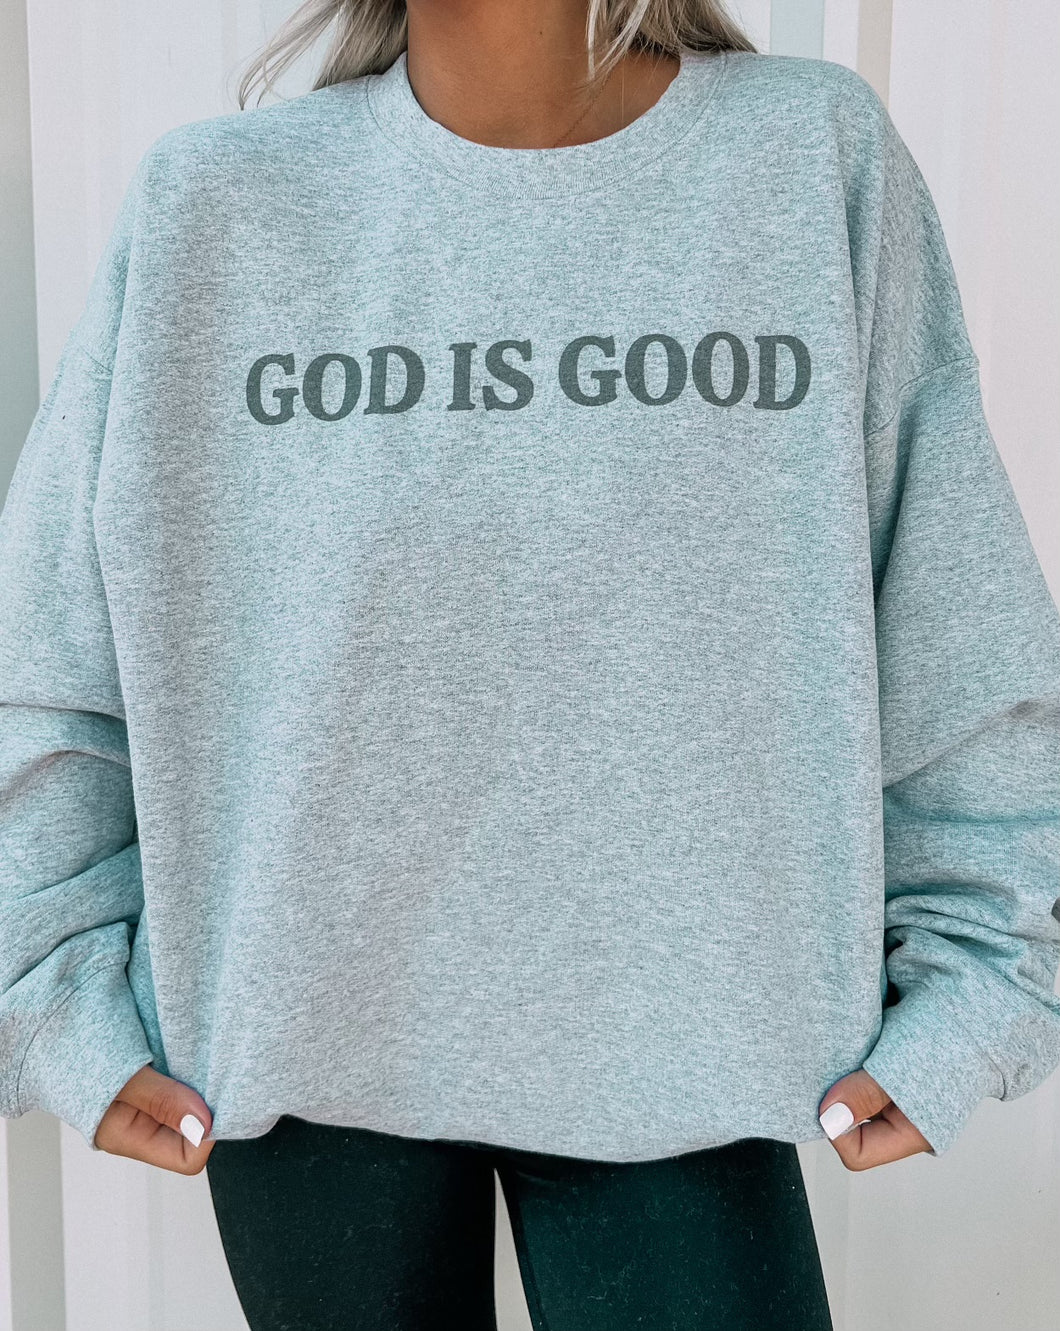 God Is Good Sweatshirt (gildan tat 1 week)